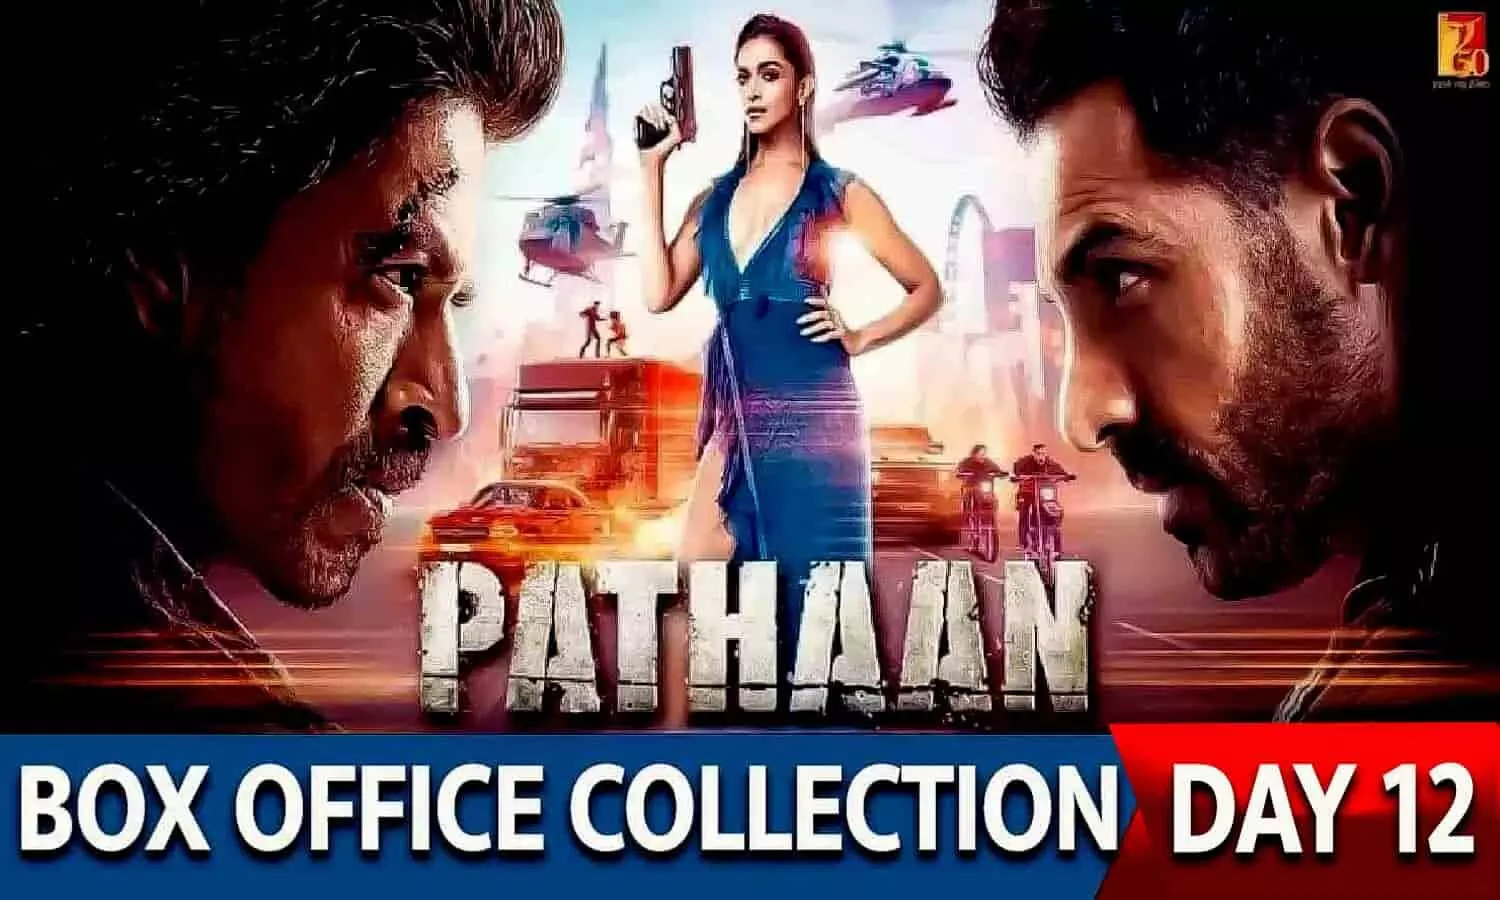 Pathaan Box Office Collection Day 12 : शाहरुख खान की पठान का किलर वीकेंड, 12वें दिन कमा डाले इतने